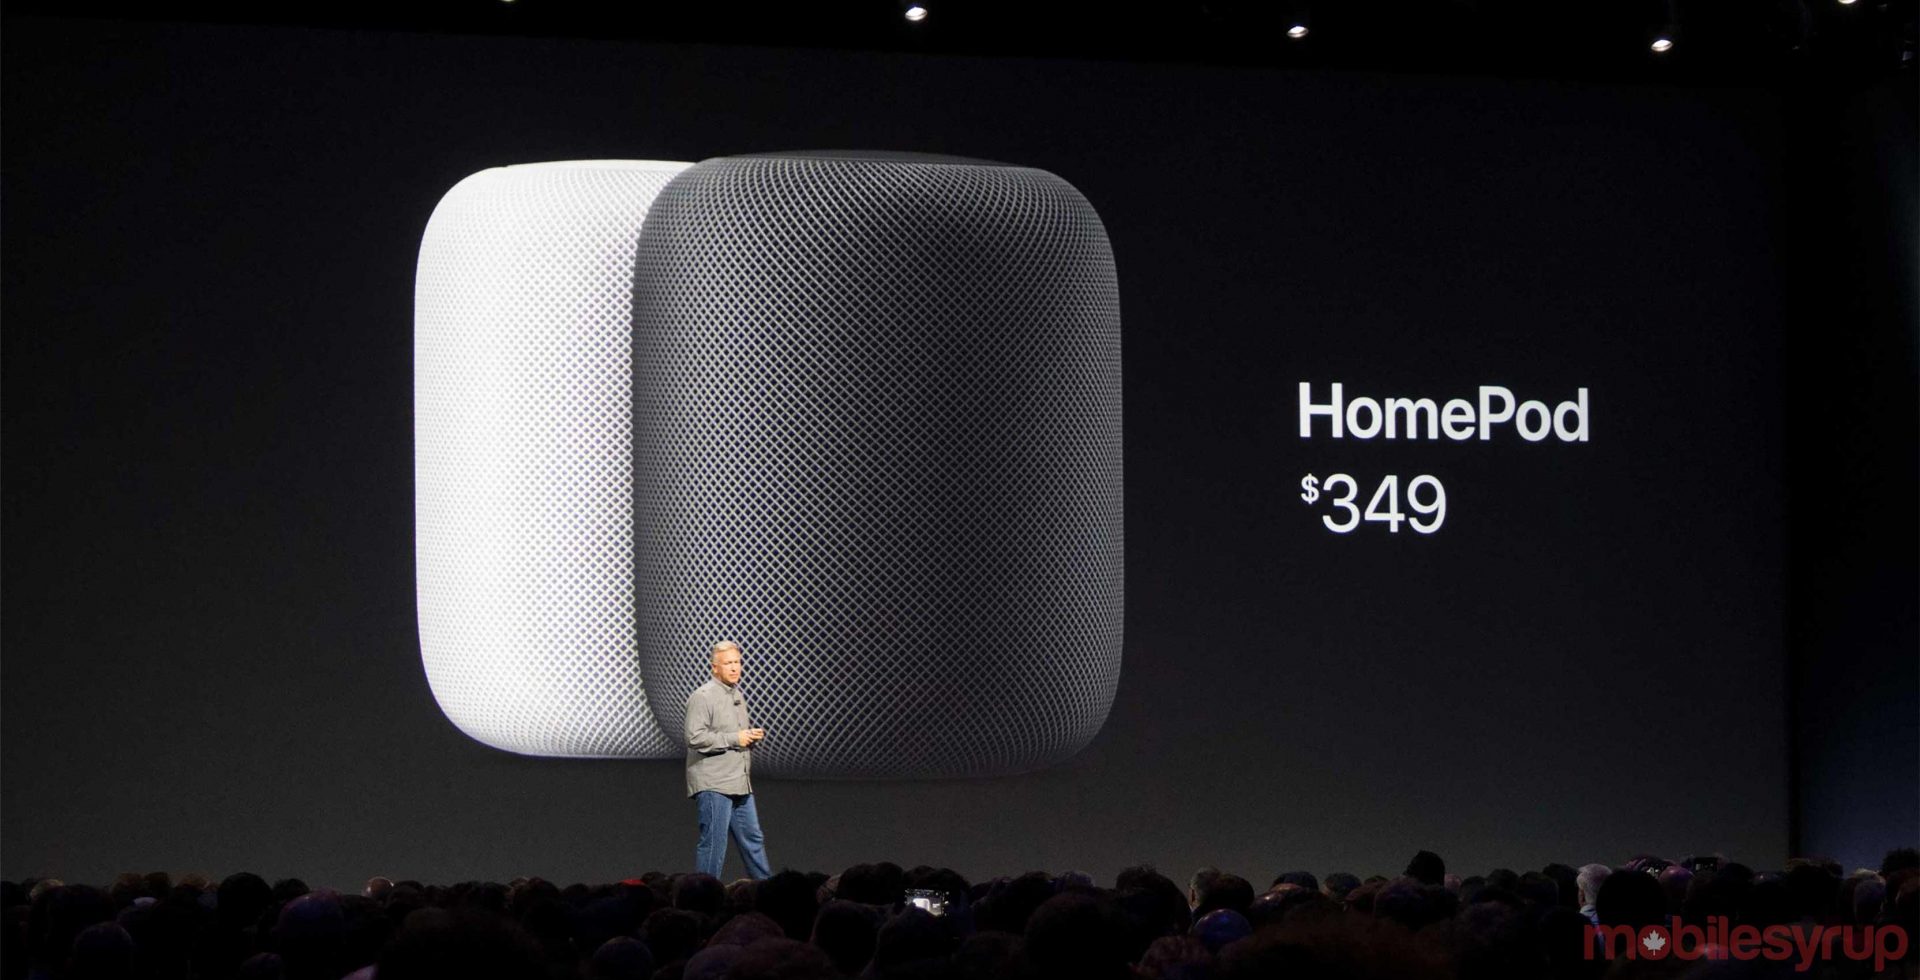 Quảng cáo đầu tiên của Apple dành cho HomePod, cảm hứng từ âm nhạc